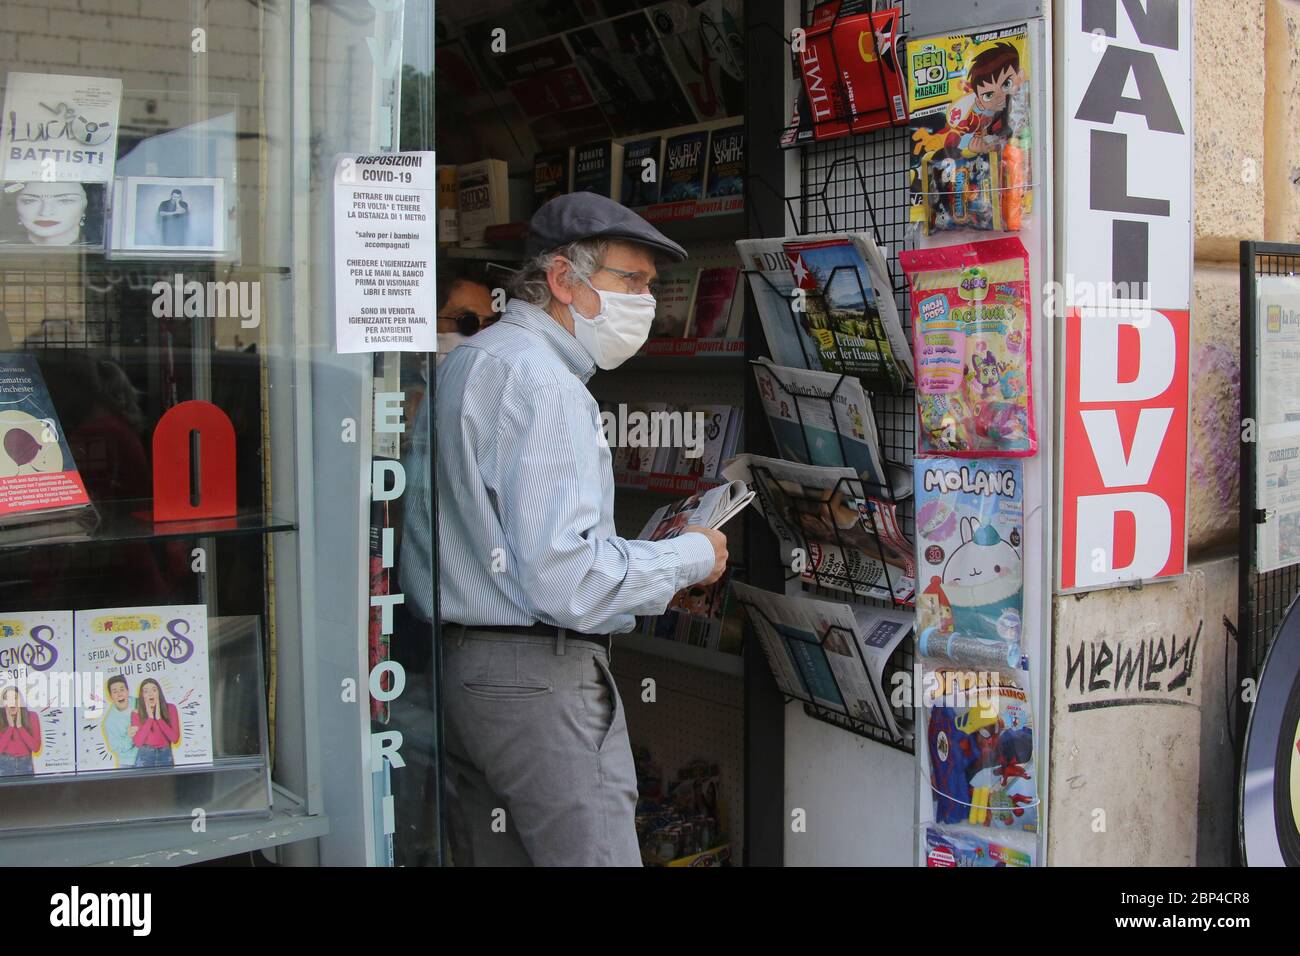 Roma, Italia, 17 maggio 2020: Uomo anziano acquista giornali in una edicola a trastevere a Roma, nell'ultimo giorno di lockdown dopo quasi 3 mesi di quarantena per causa della pandemia Covid-19. Stock Photo